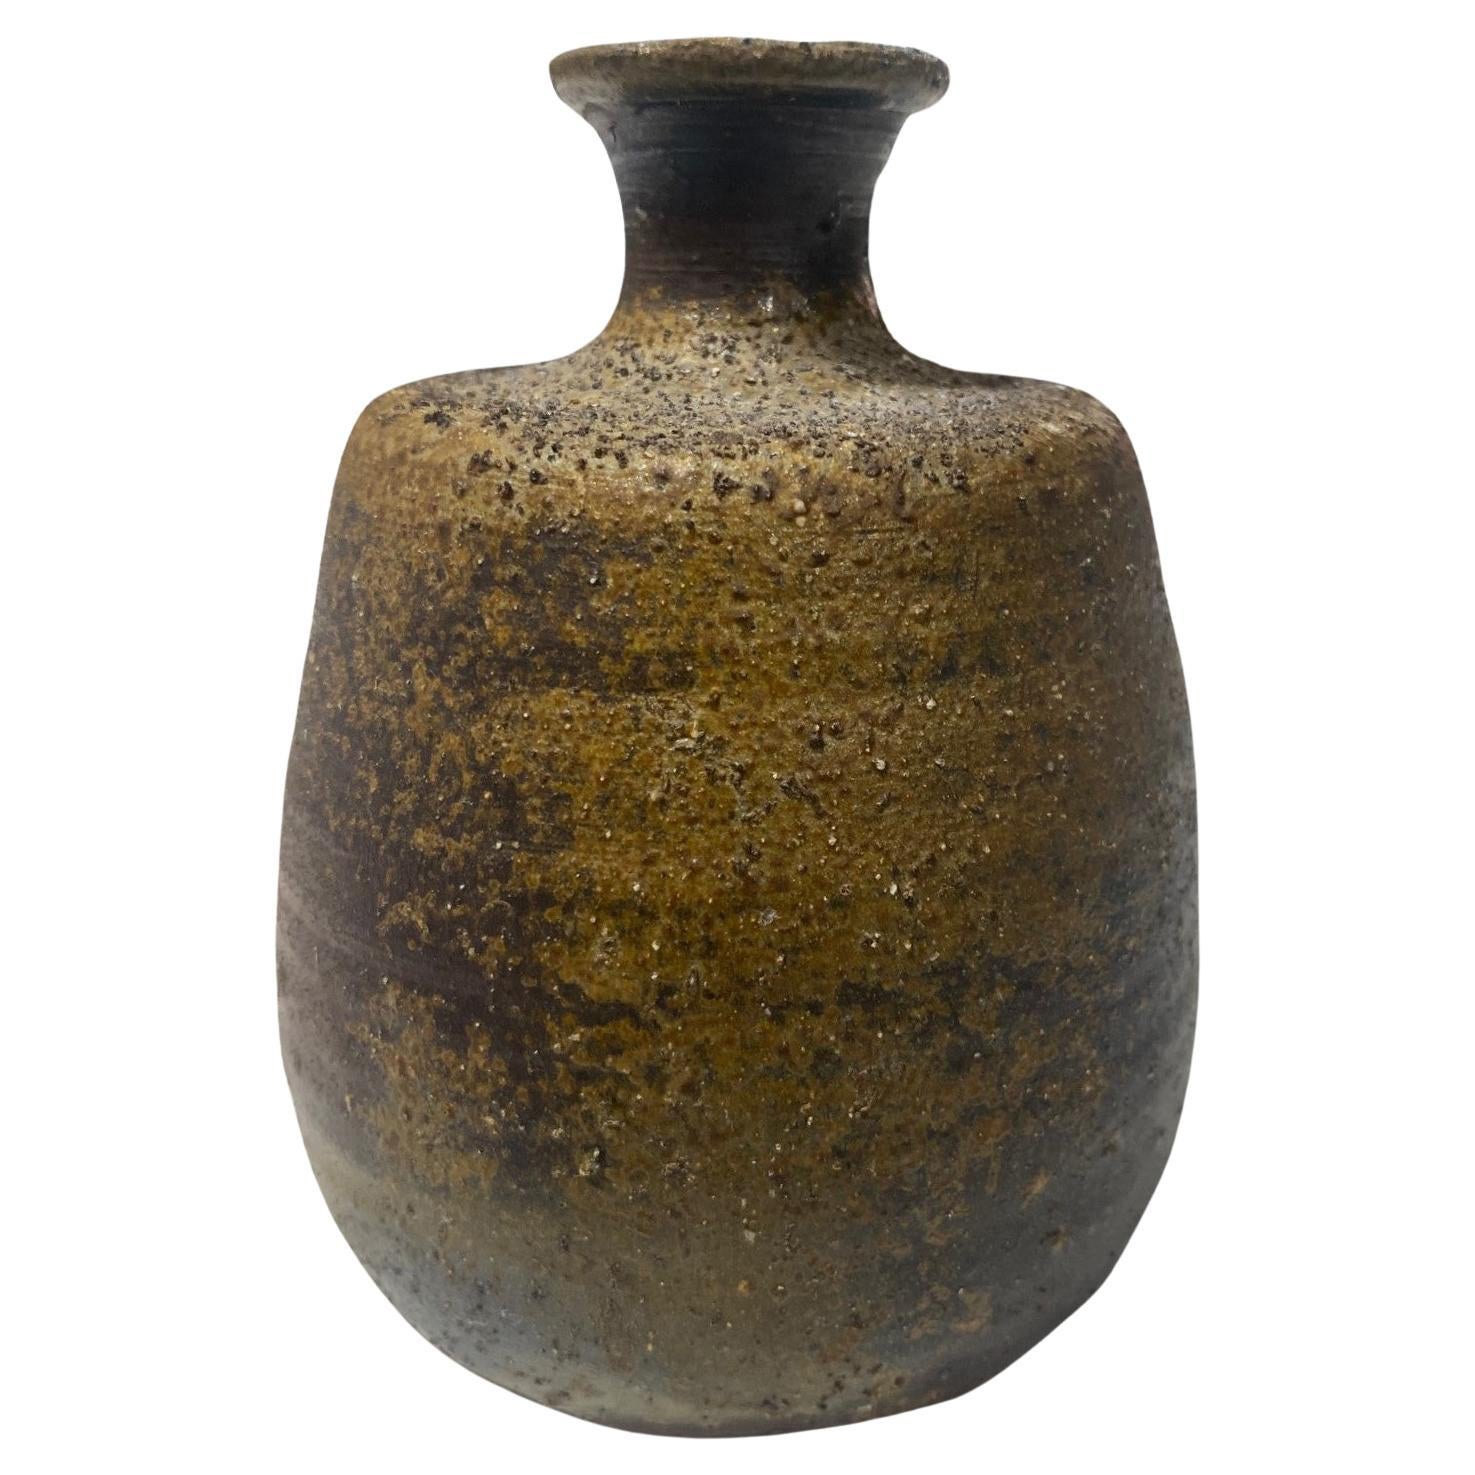 Kaneshige Toyo National Treasure Signed Japanese Bizen Pottery Sake Bottle Vase For Sale